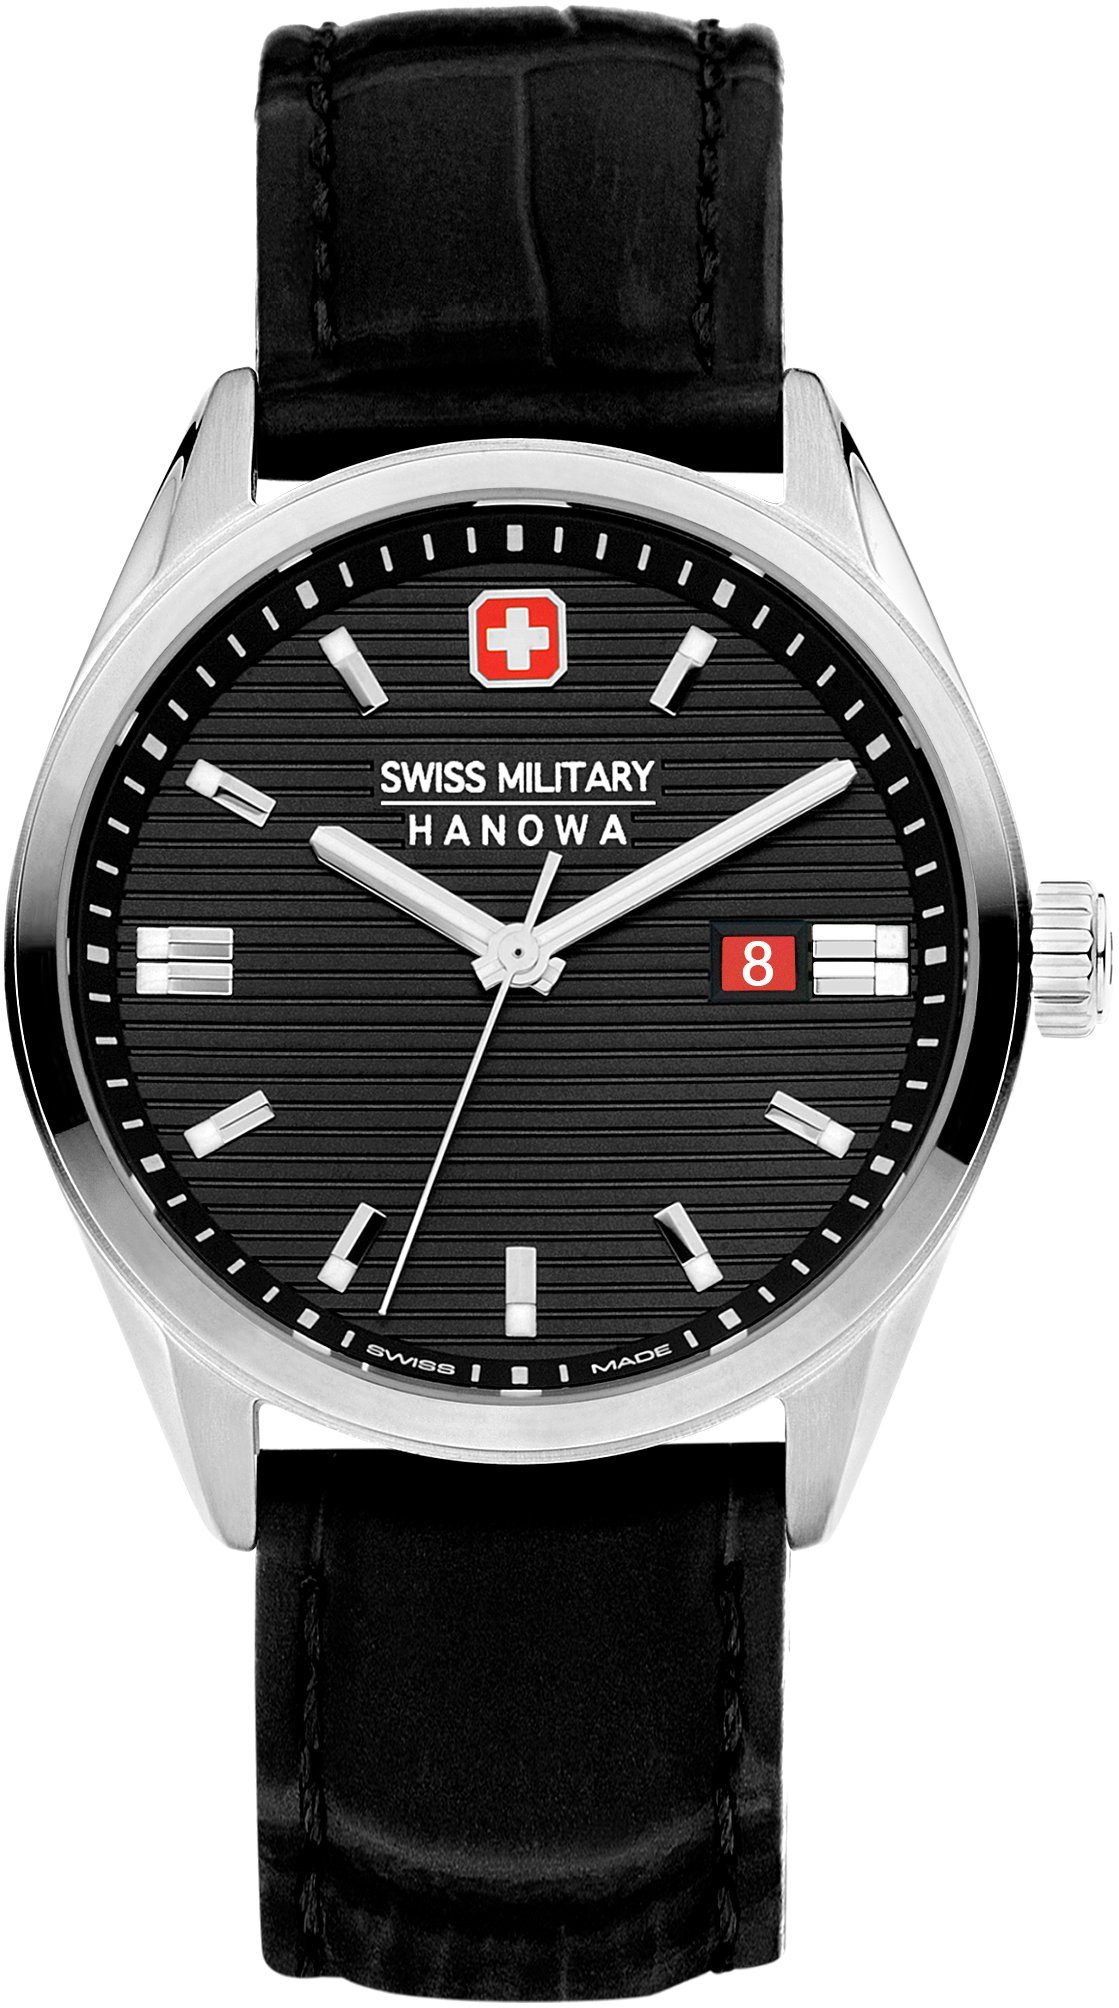 Schwarz Uhr SMWGB2200104 Swiss Hanowa ROADRUNNER, Military Schweizer